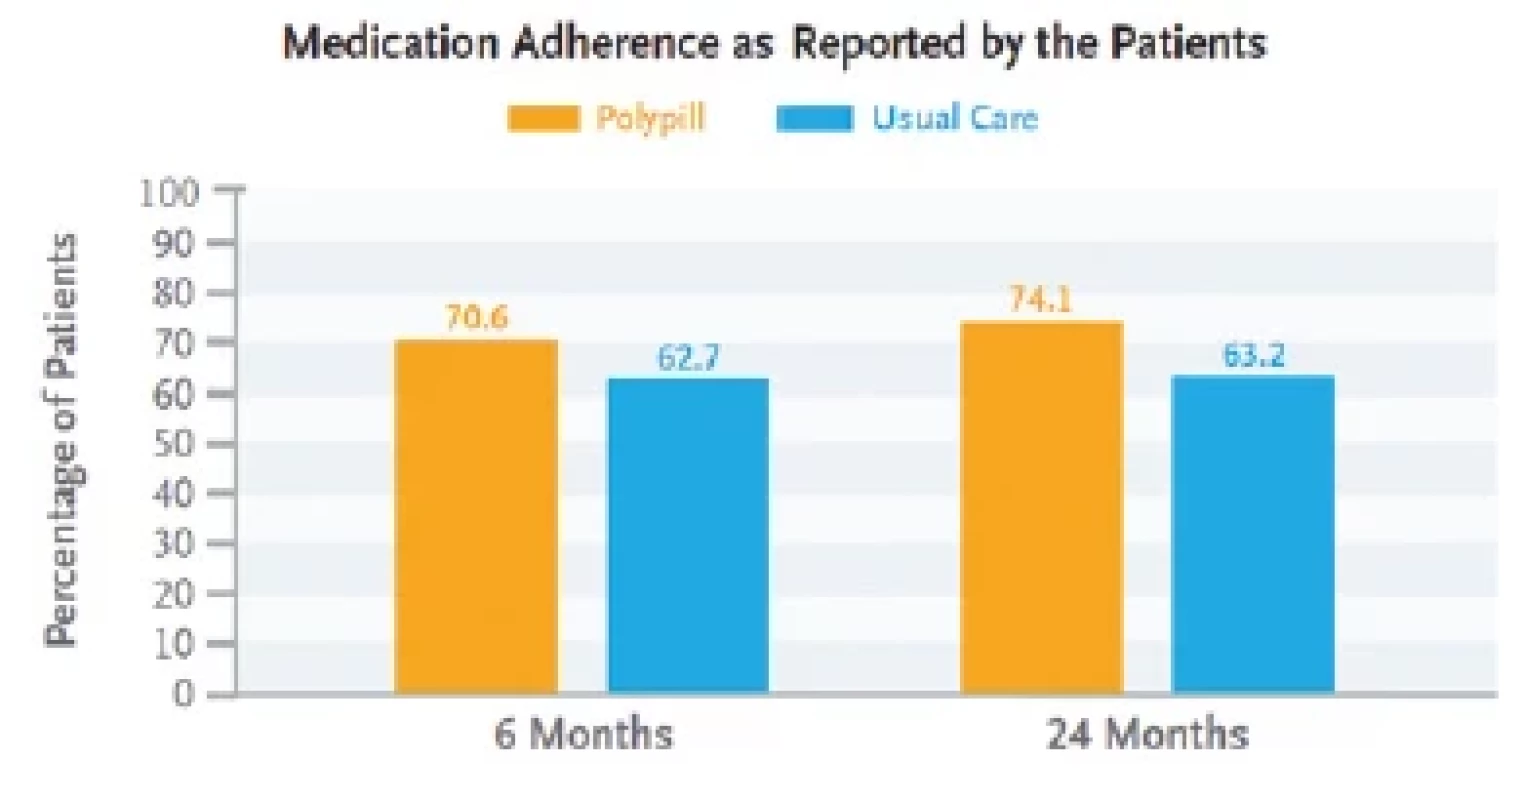 Adherence pacientů k užívání polypill (žlutě) a běžných léků (modře)
po 6 a 24 měsících. Převzato z (1)